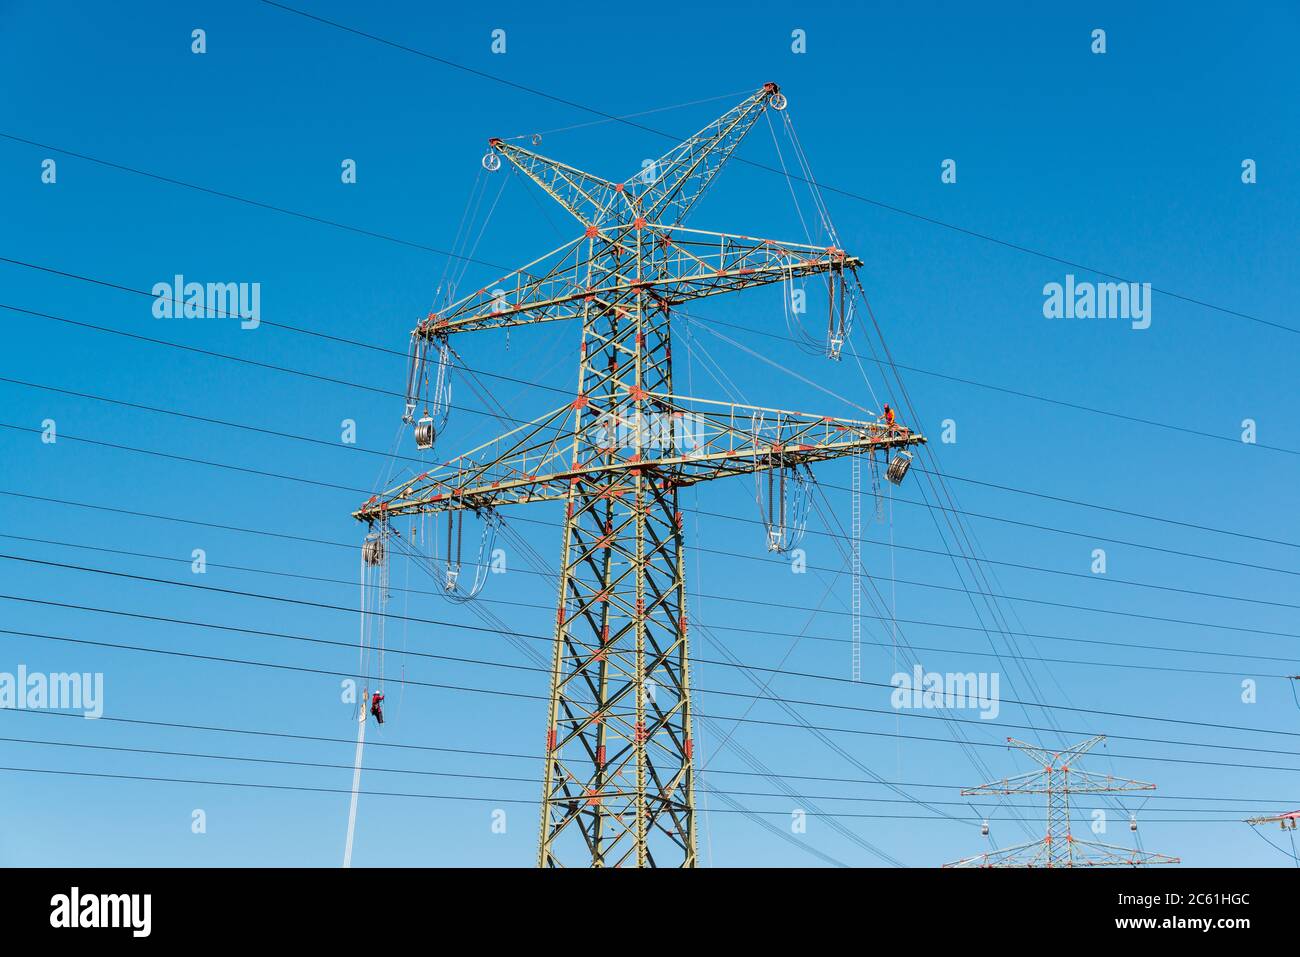 Arbeiter auf einem Hochspannungsmast vor blauem wolkenlosen Himmel Foto de stock